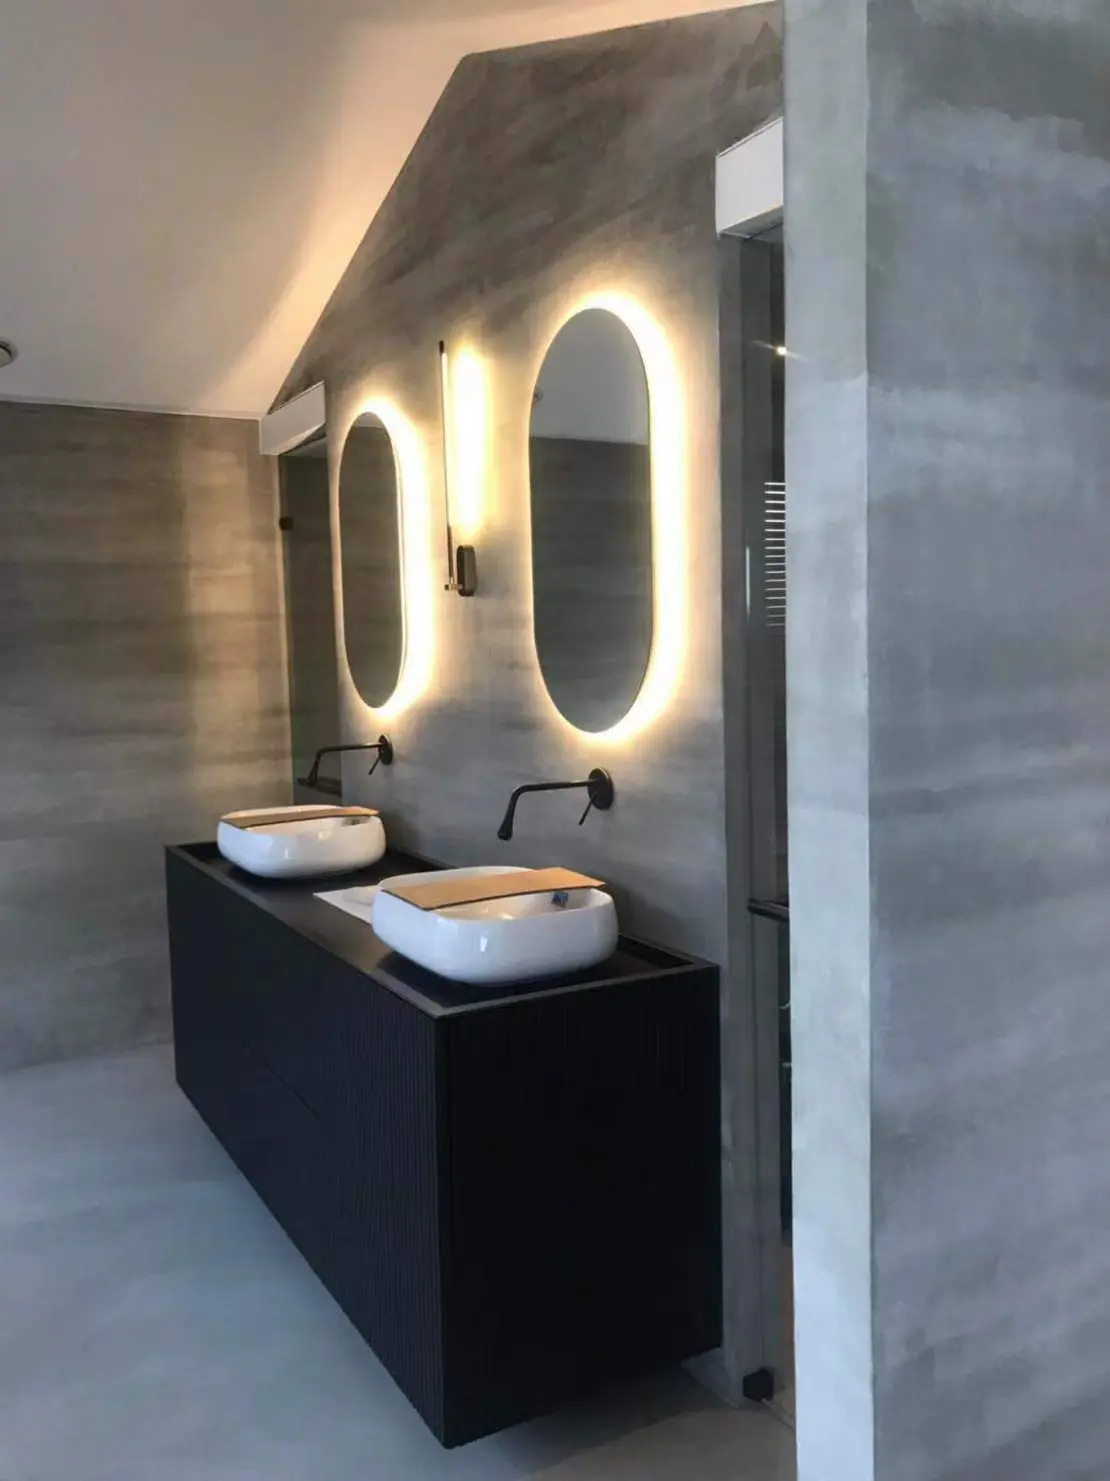 Mikrocement na tleh in stenah minimalistične kopalnice, okrašene s črnimi pipami